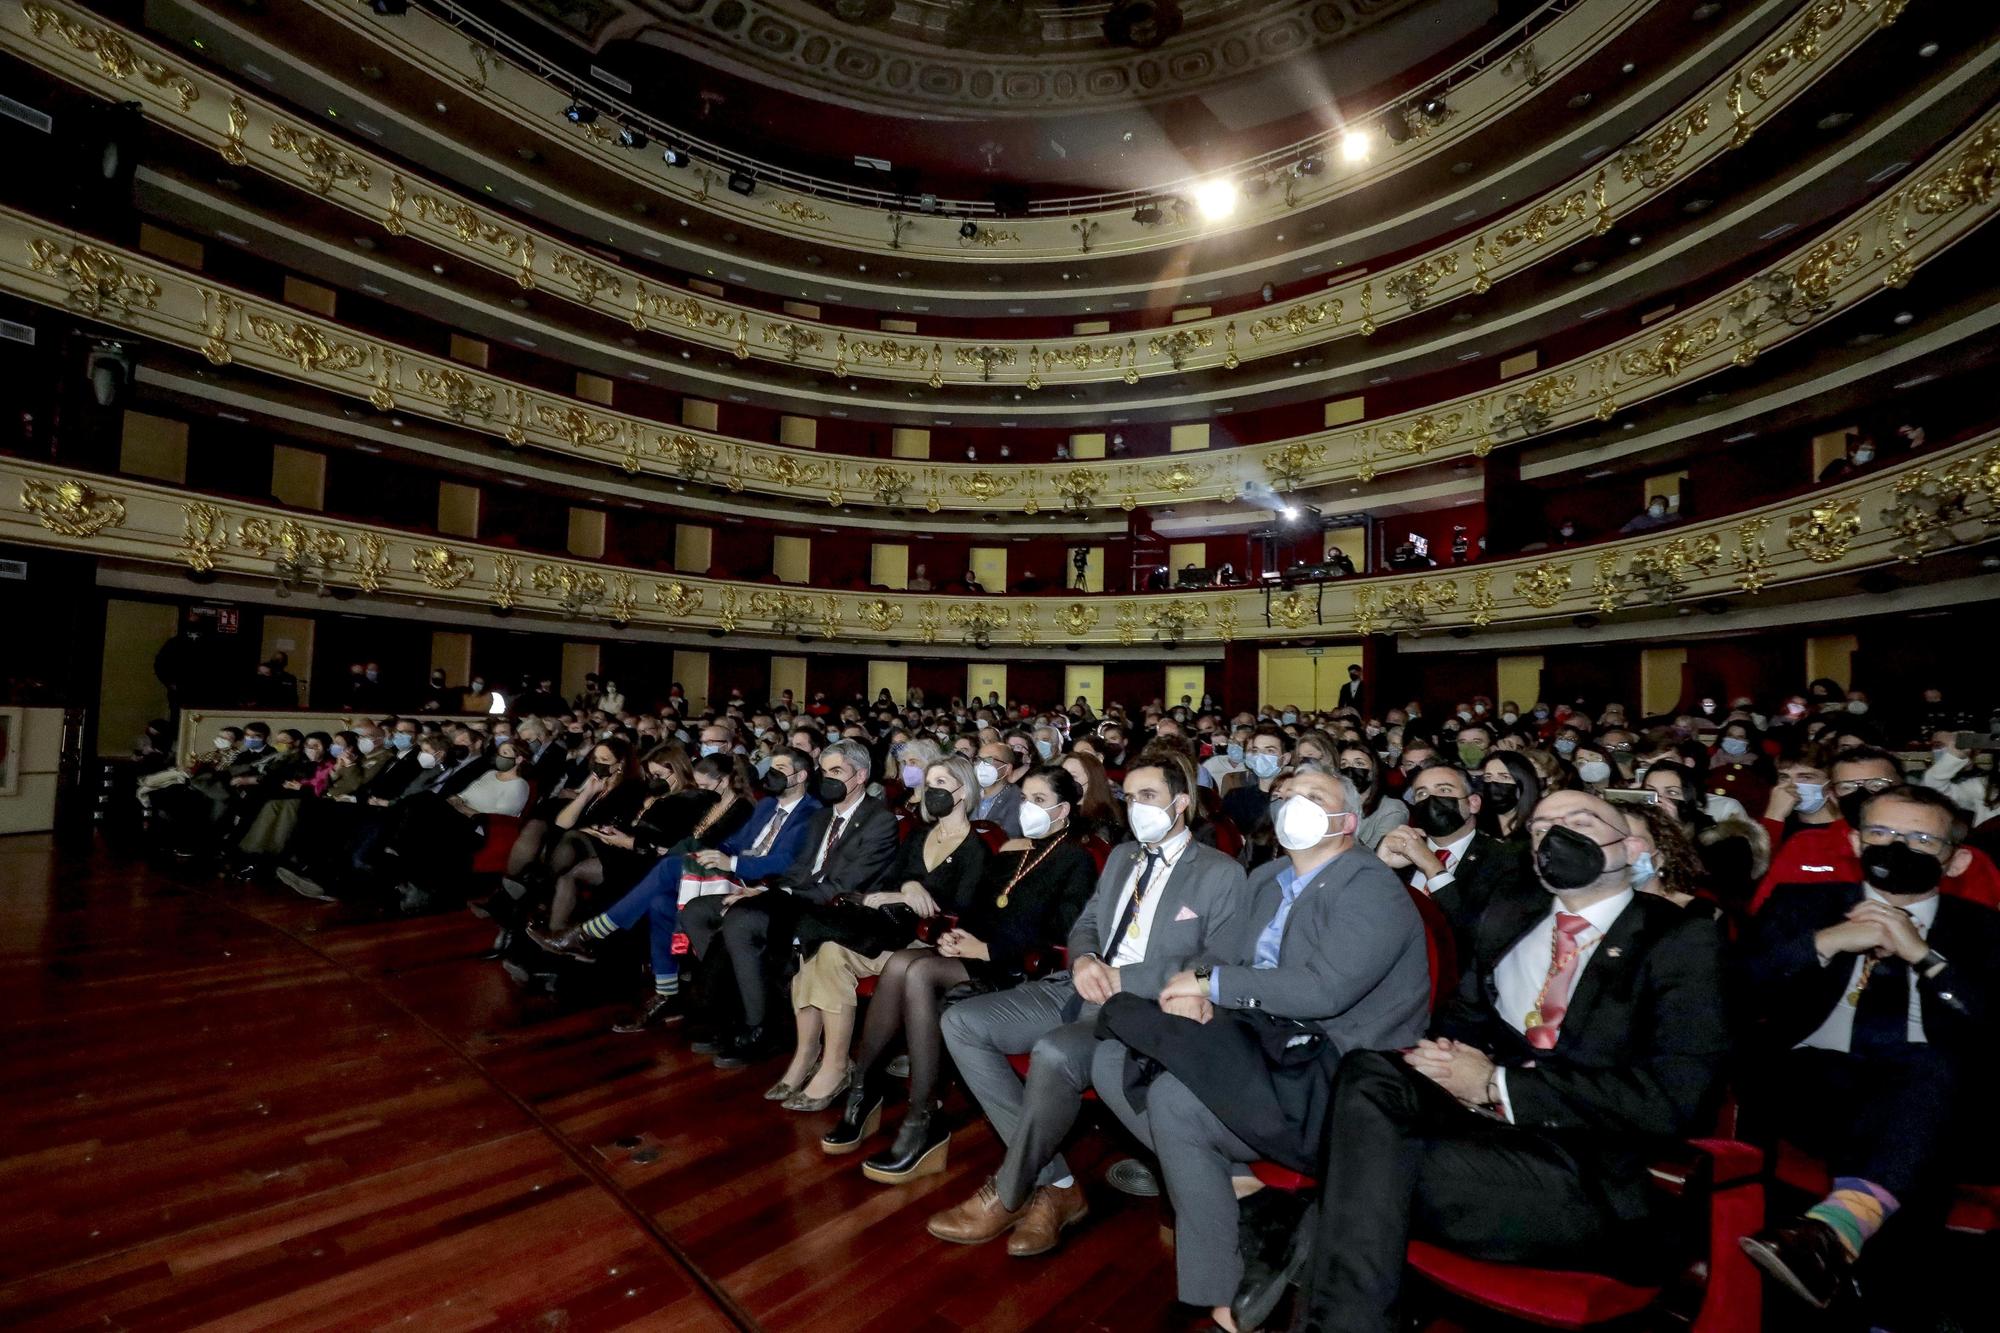 El Consell de Mallorca entrega los premios de la Diada